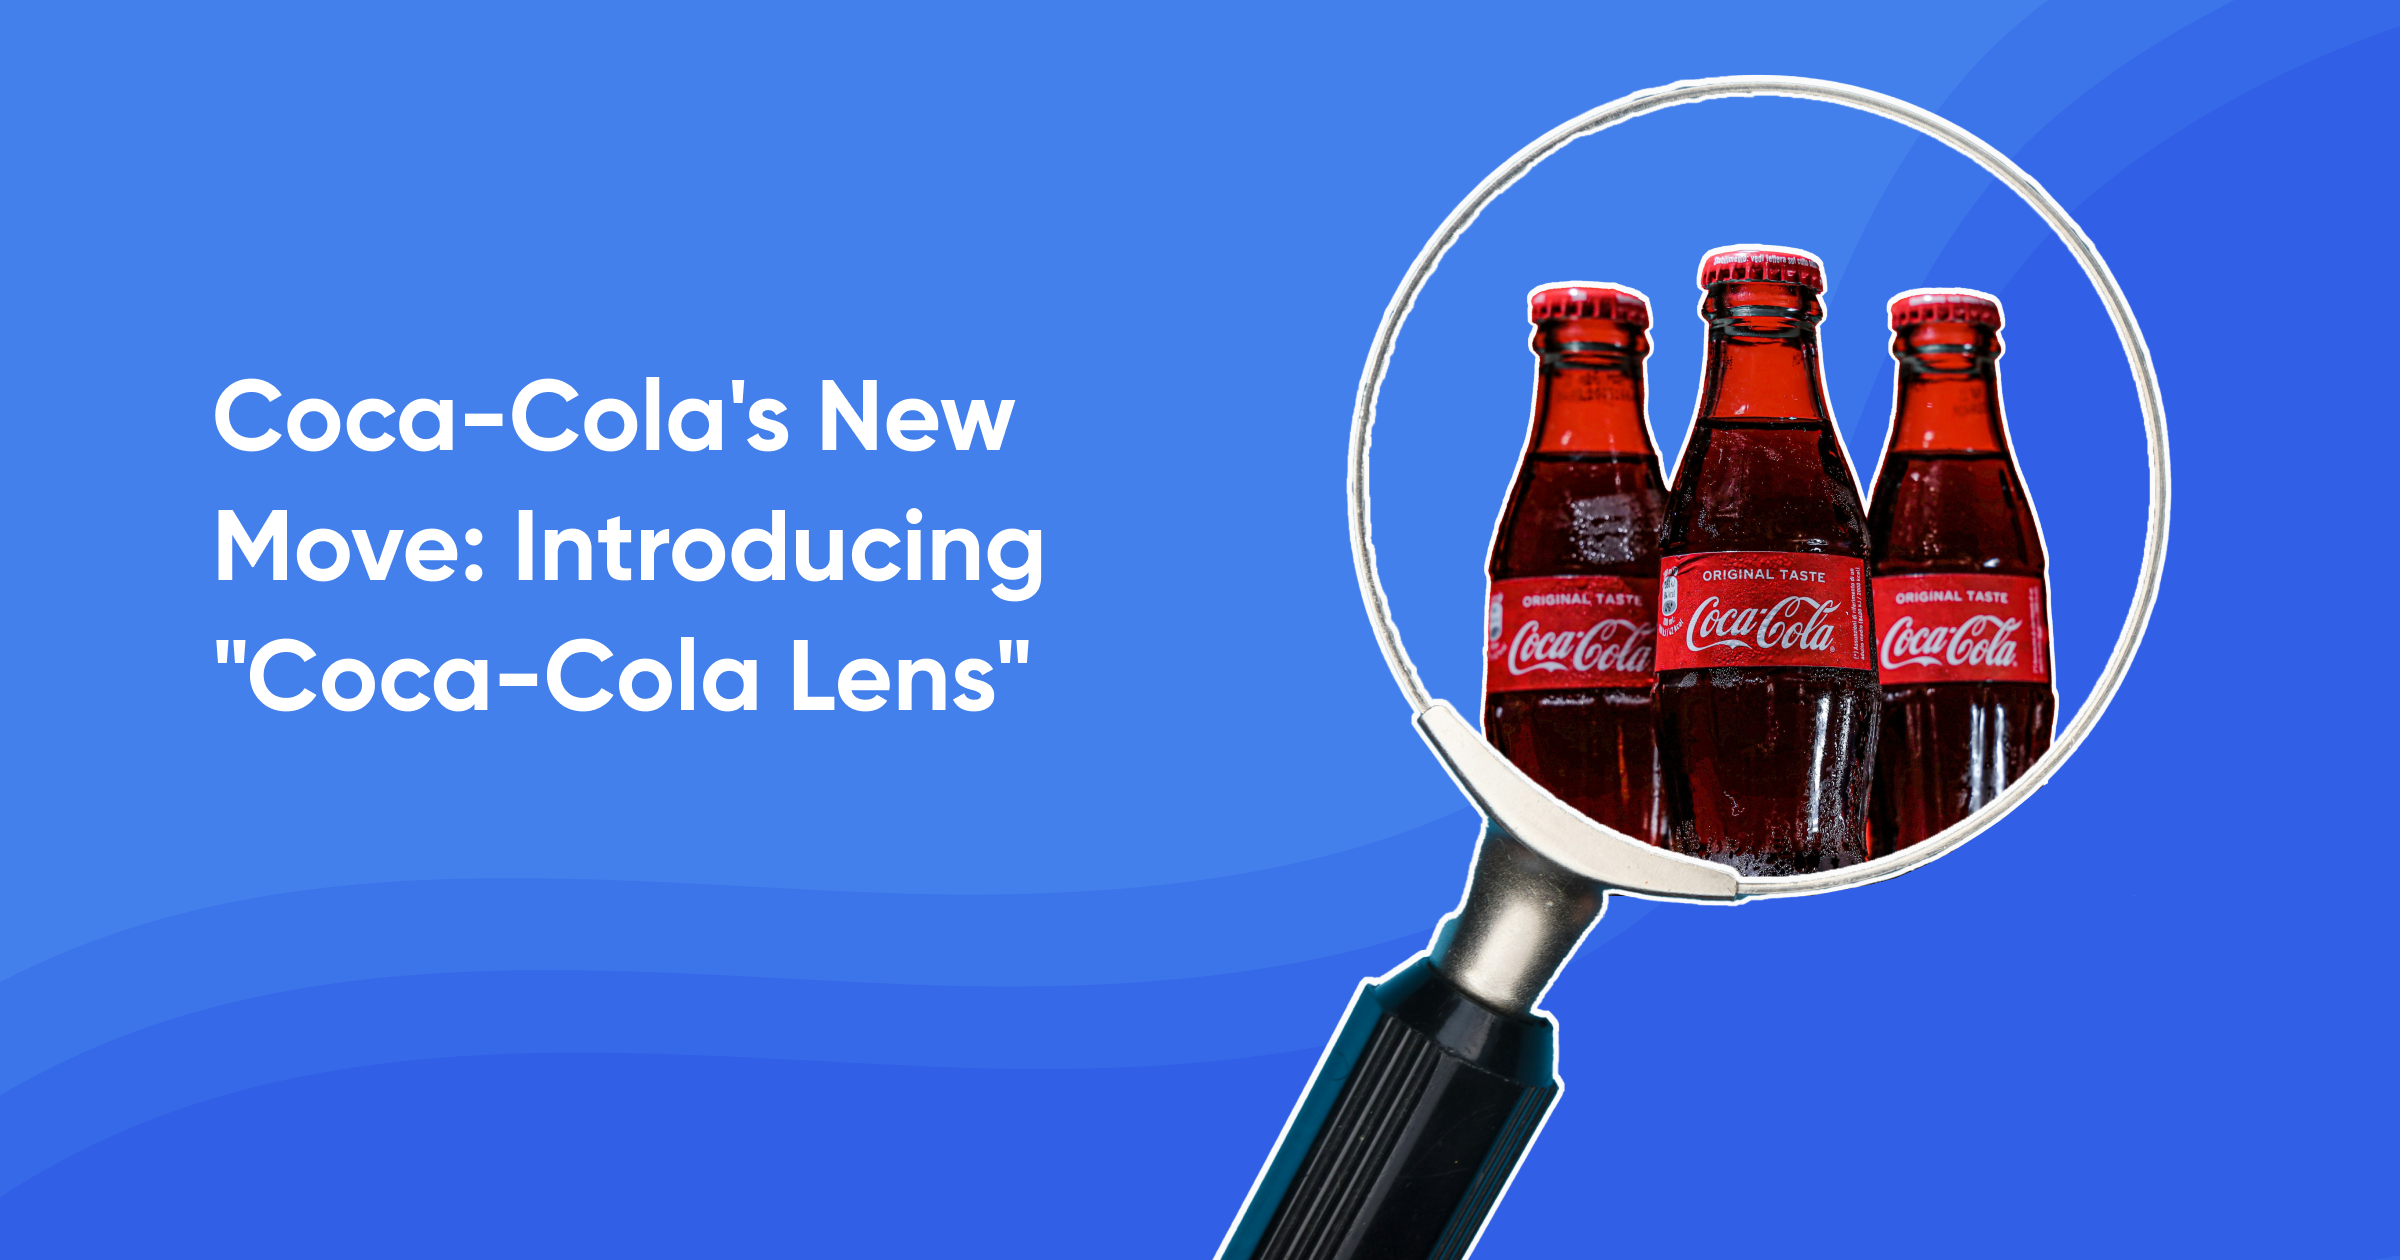 Coca-Cola's New Move: Introducing "Coca-Cola Lens"